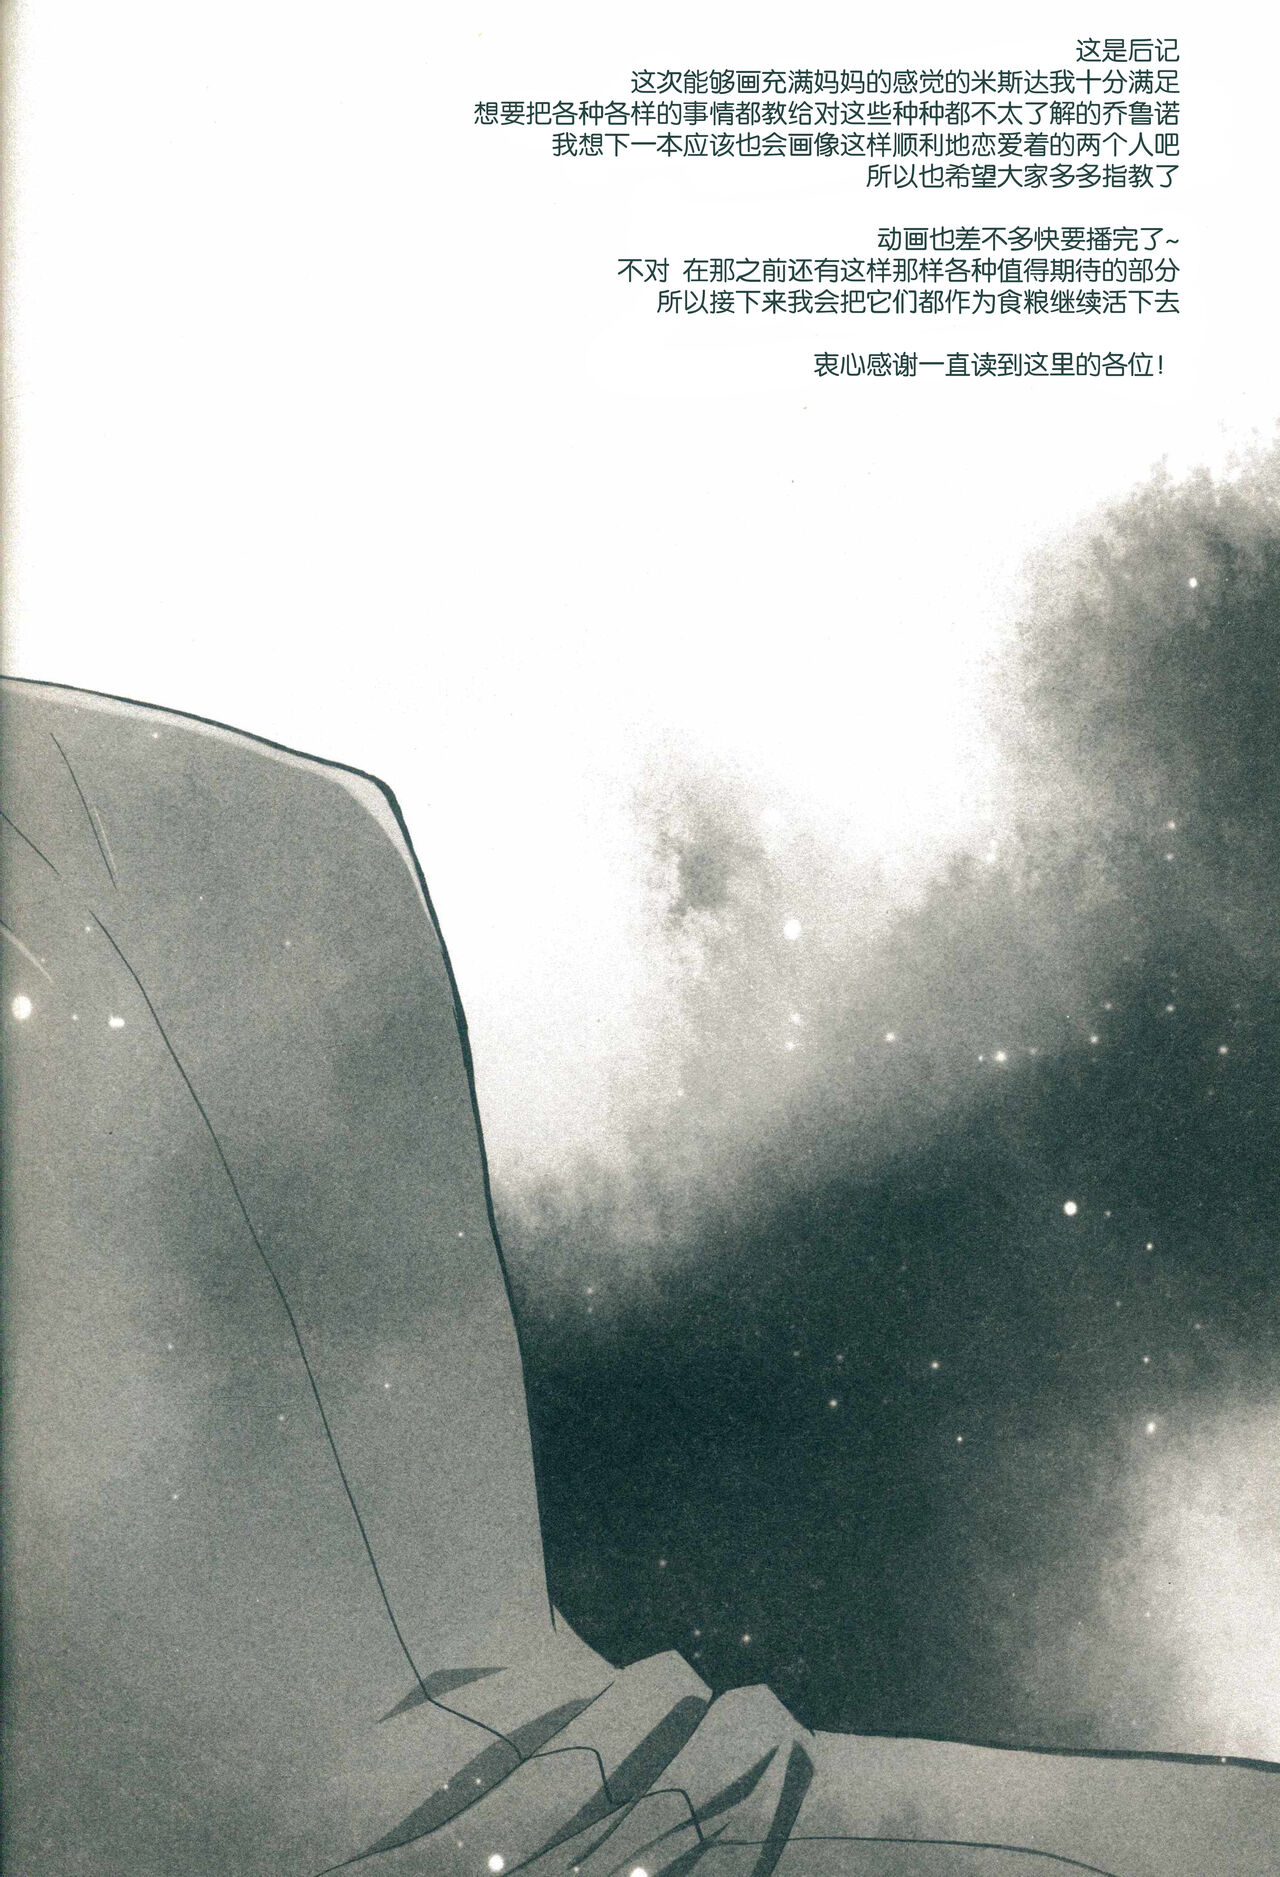 [Chikadoh (Halco)] Futari ho ゙ ~tsuChino wakusei (JoJo's Bizarre Adventure) [Chinese] [莉赛特汉化组] (スーパー・ザ・ワールド2019) [地下堂 (ハルコ)] ふたりぼっちの惑星 (ジョジョの奇妙な冒険) [中国翻訳]